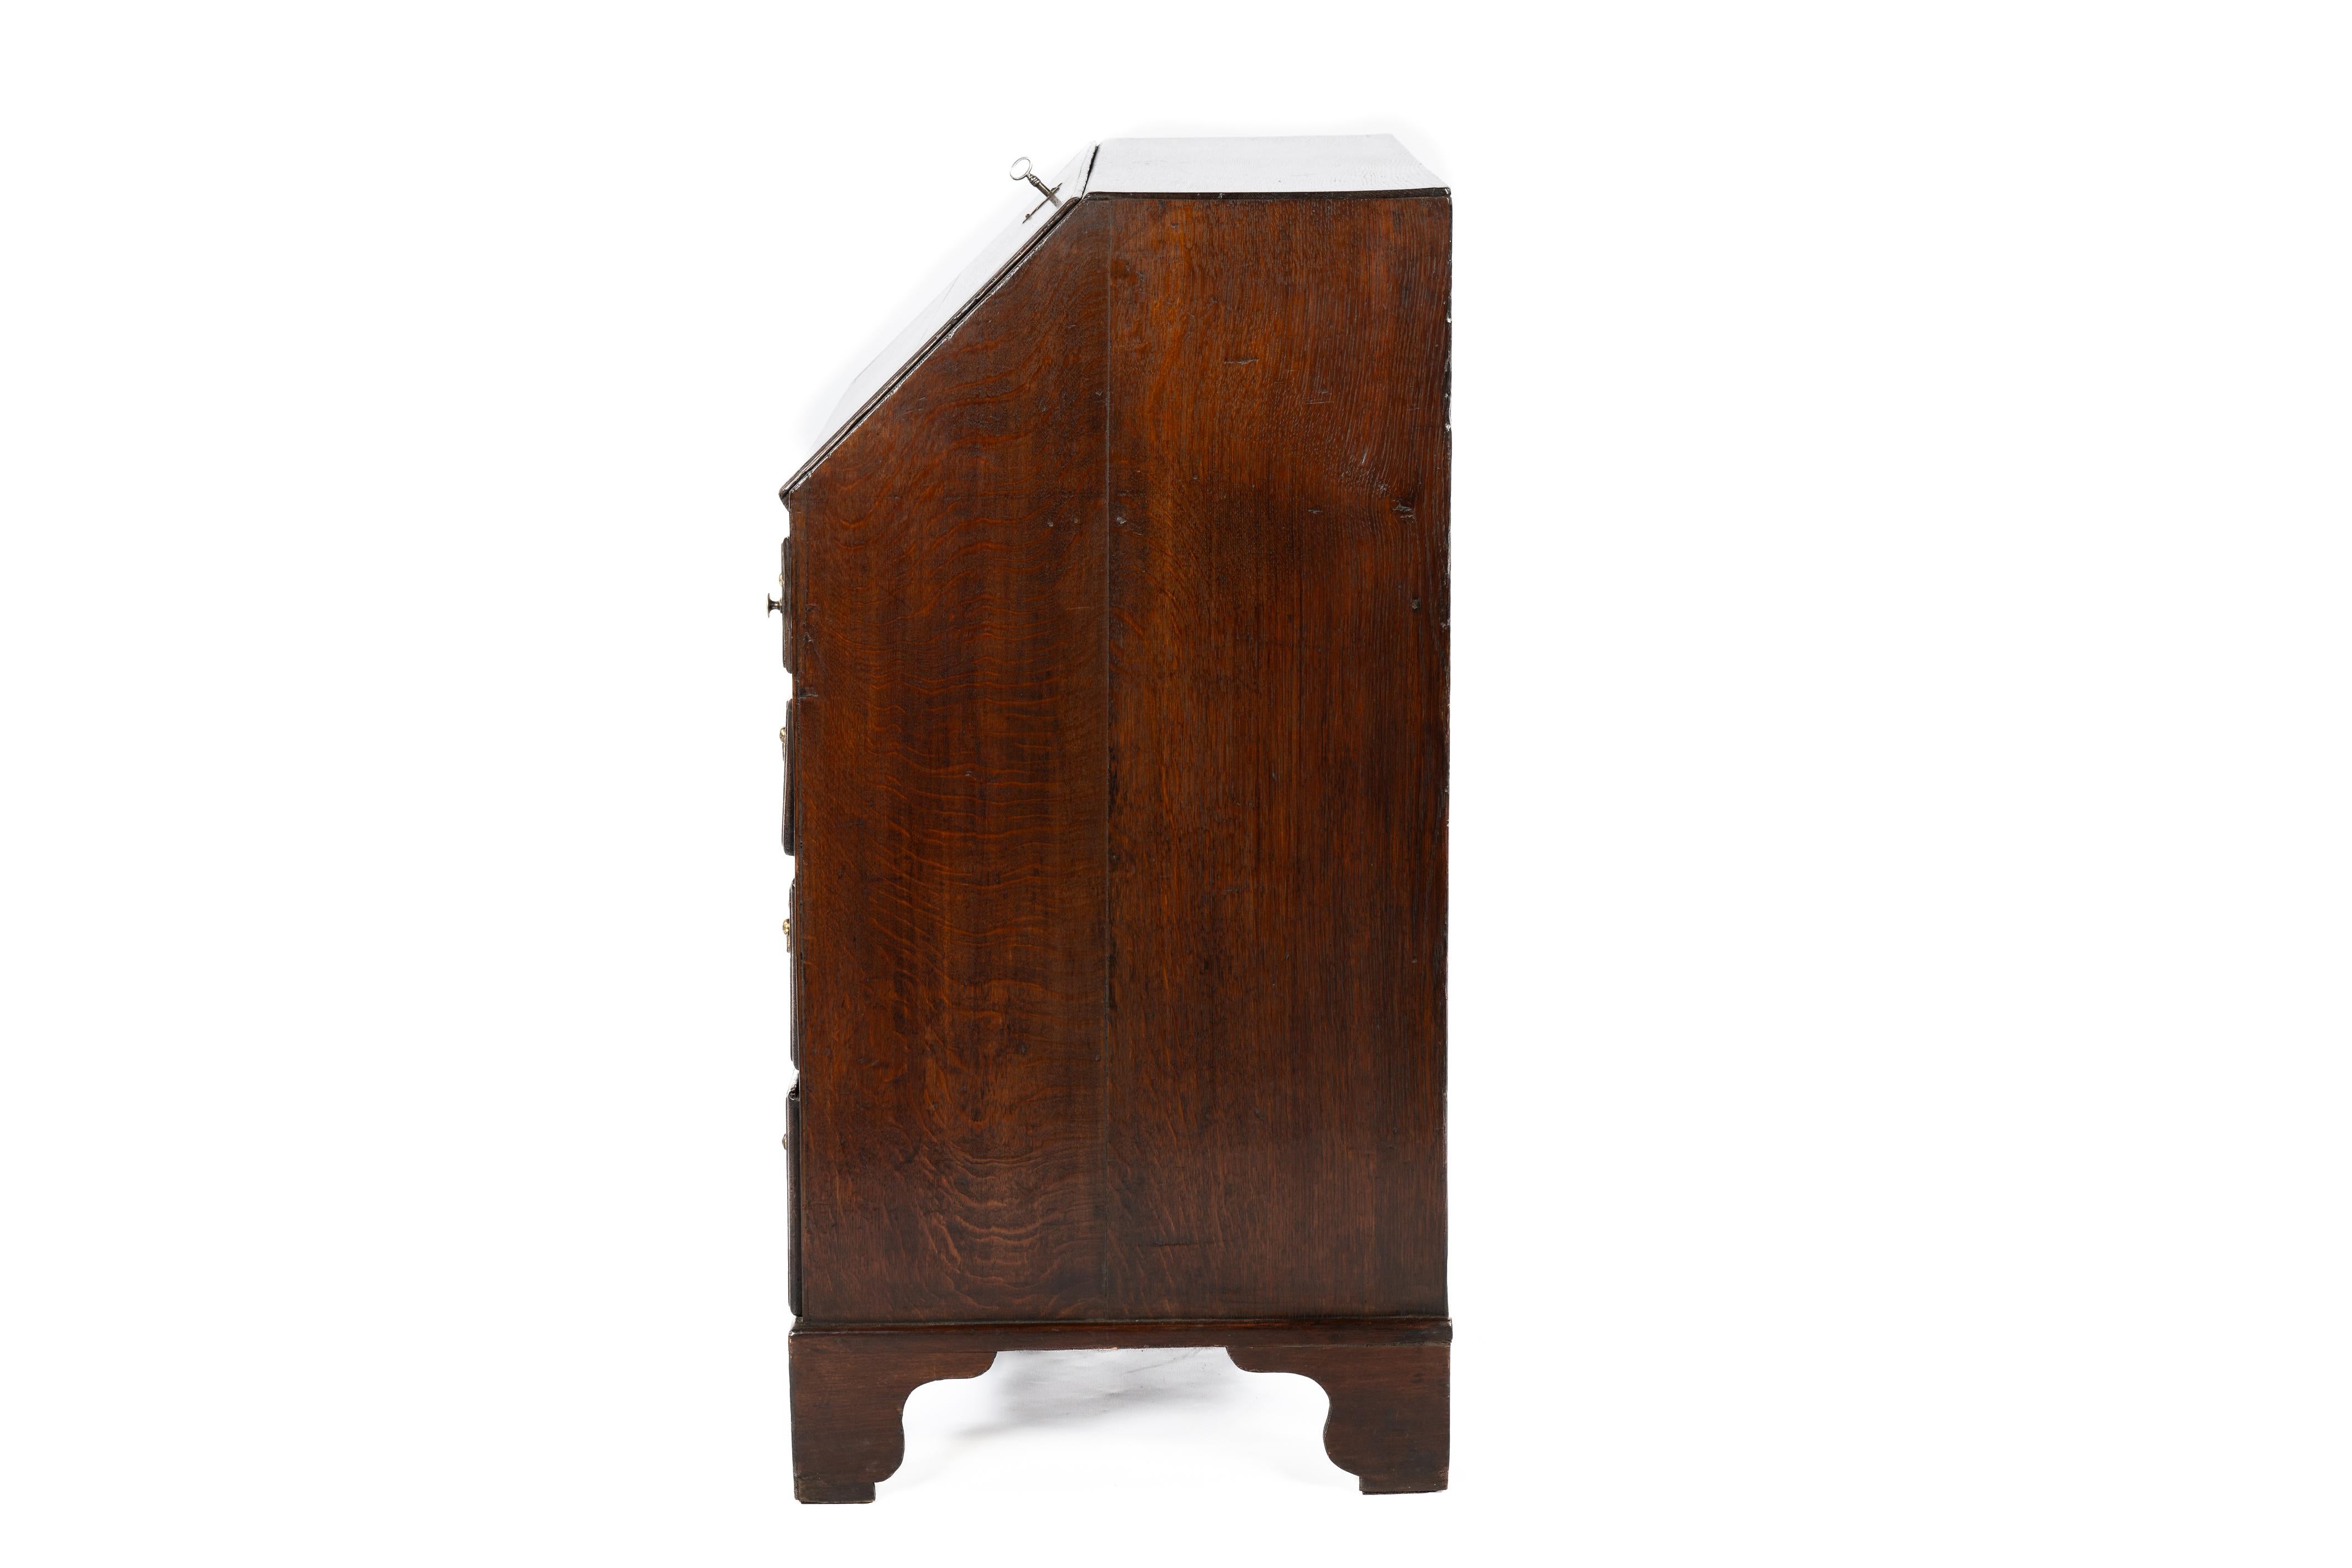 Antique 18th century warm brown English Oak Queen Anne Slant-Front Desk For Sale 1